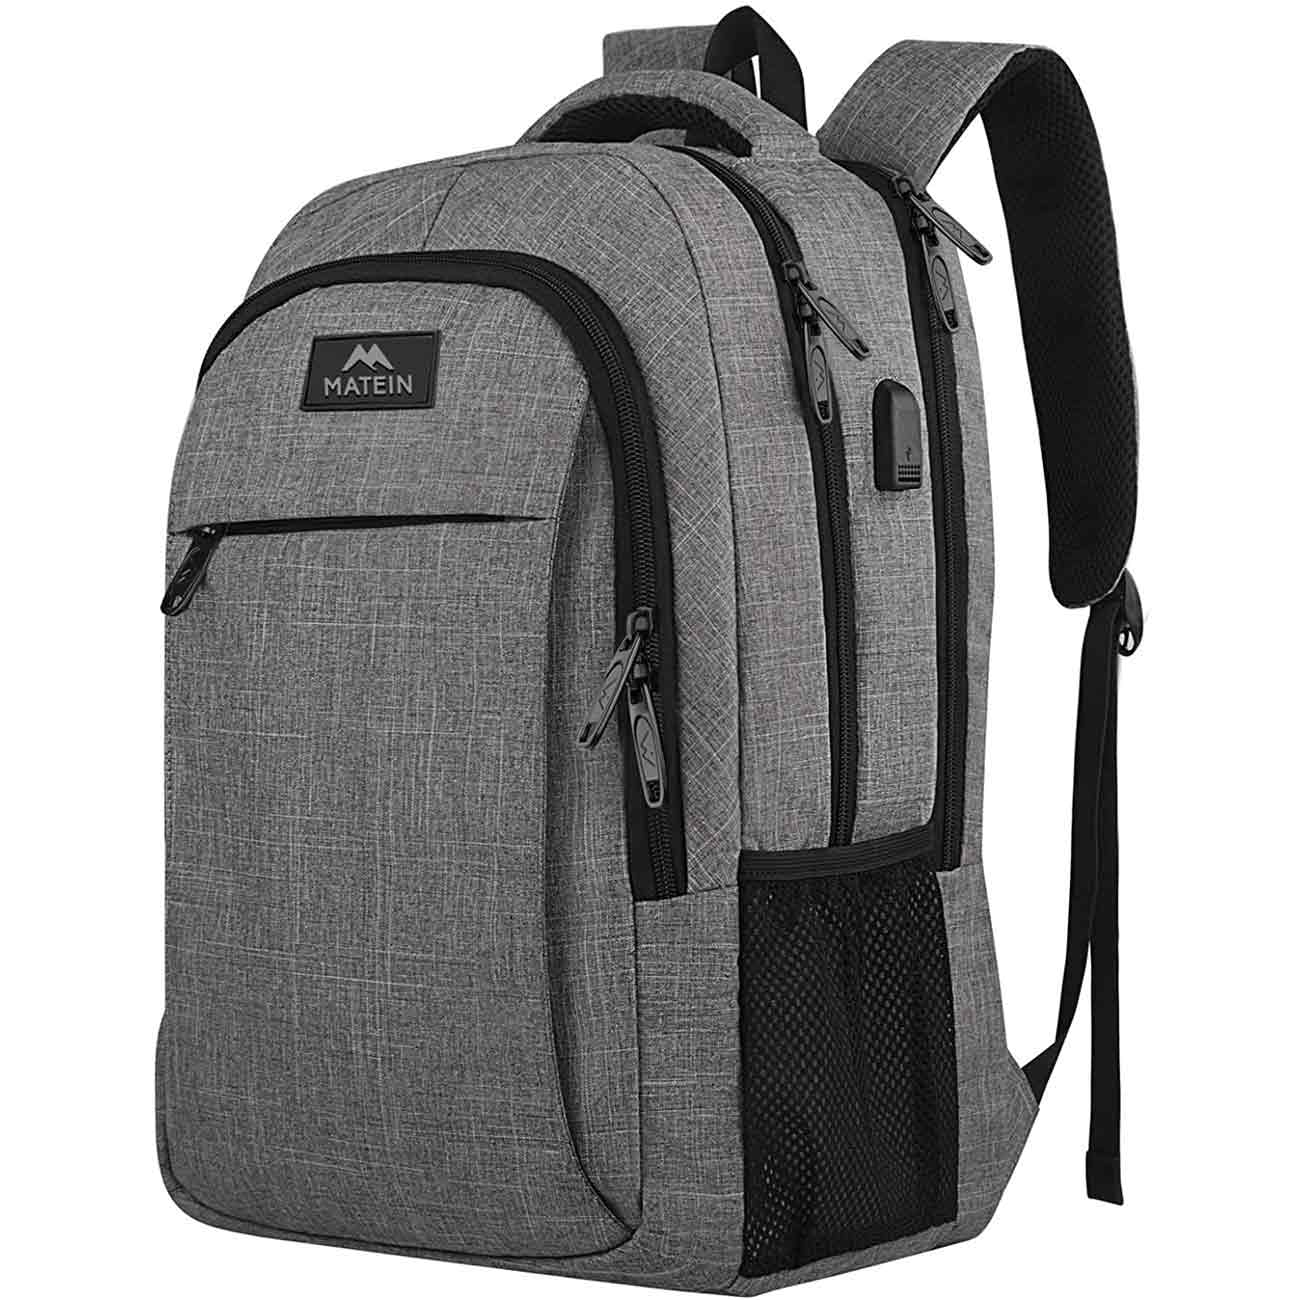 Methode Echt zegen Matein Mlassic Travel Laptop Backpack with USB Charging Port